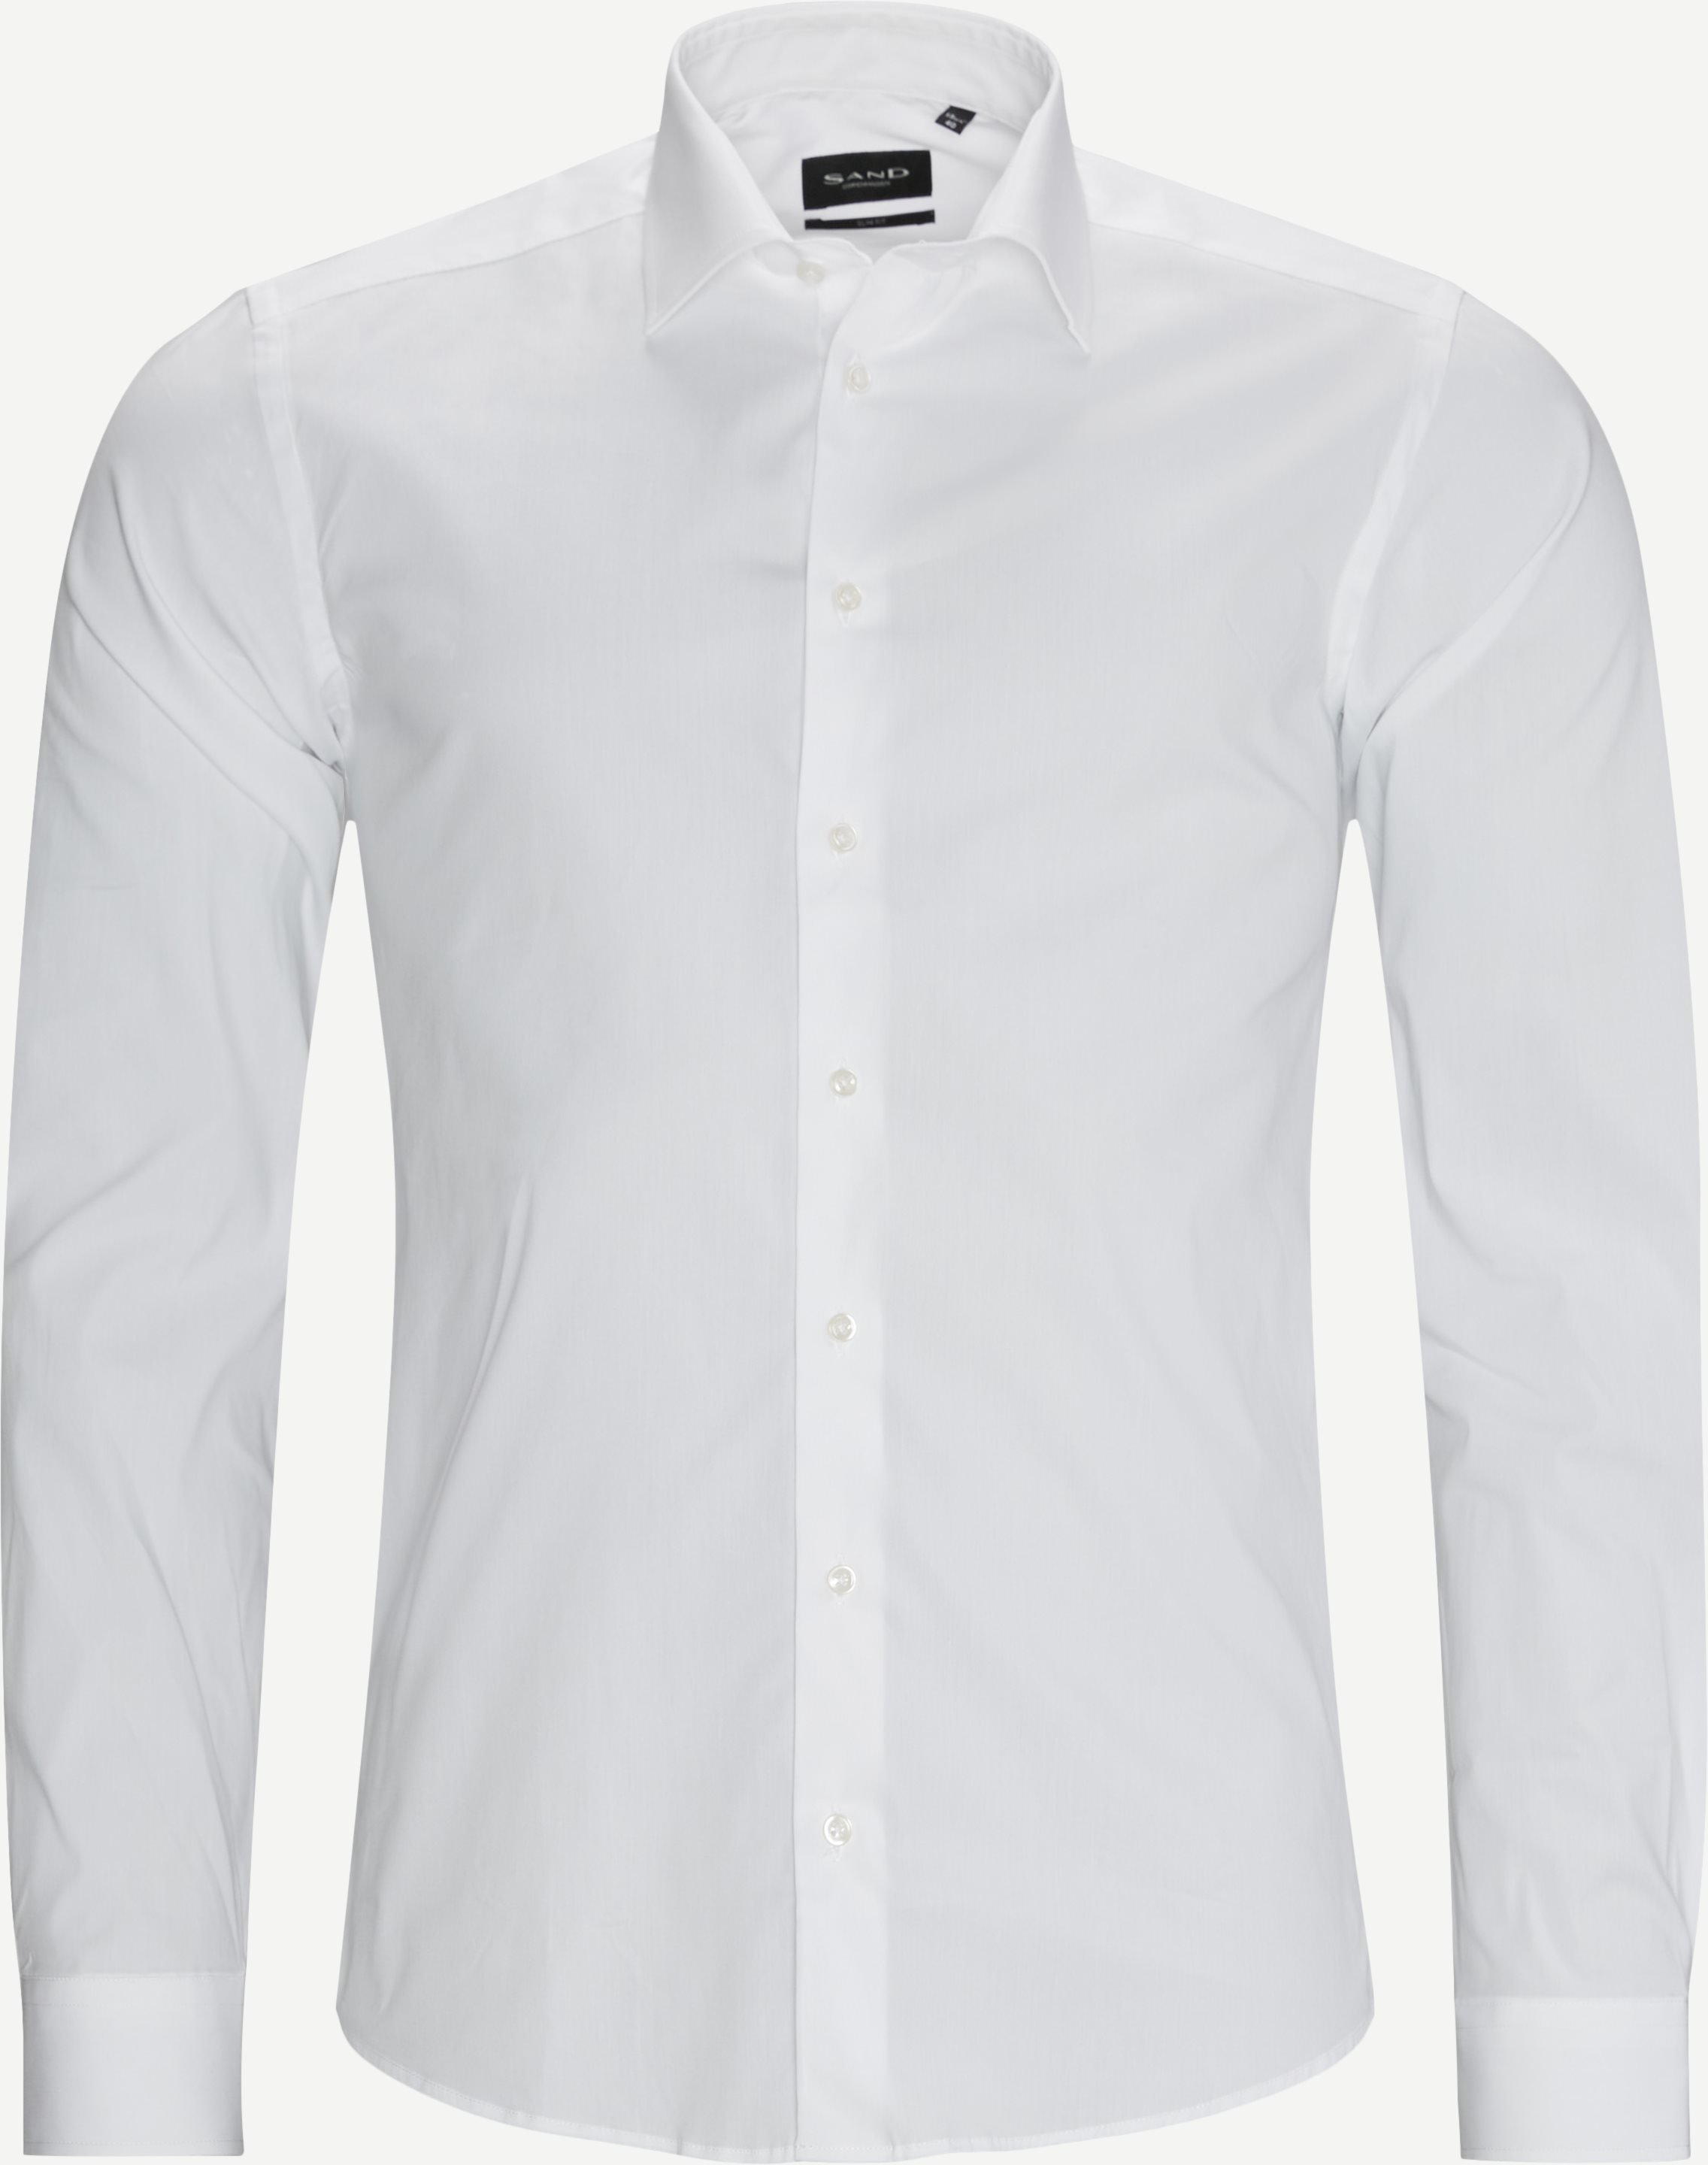 8805 Iver2/State2 Hemd - Hemden - Weiß